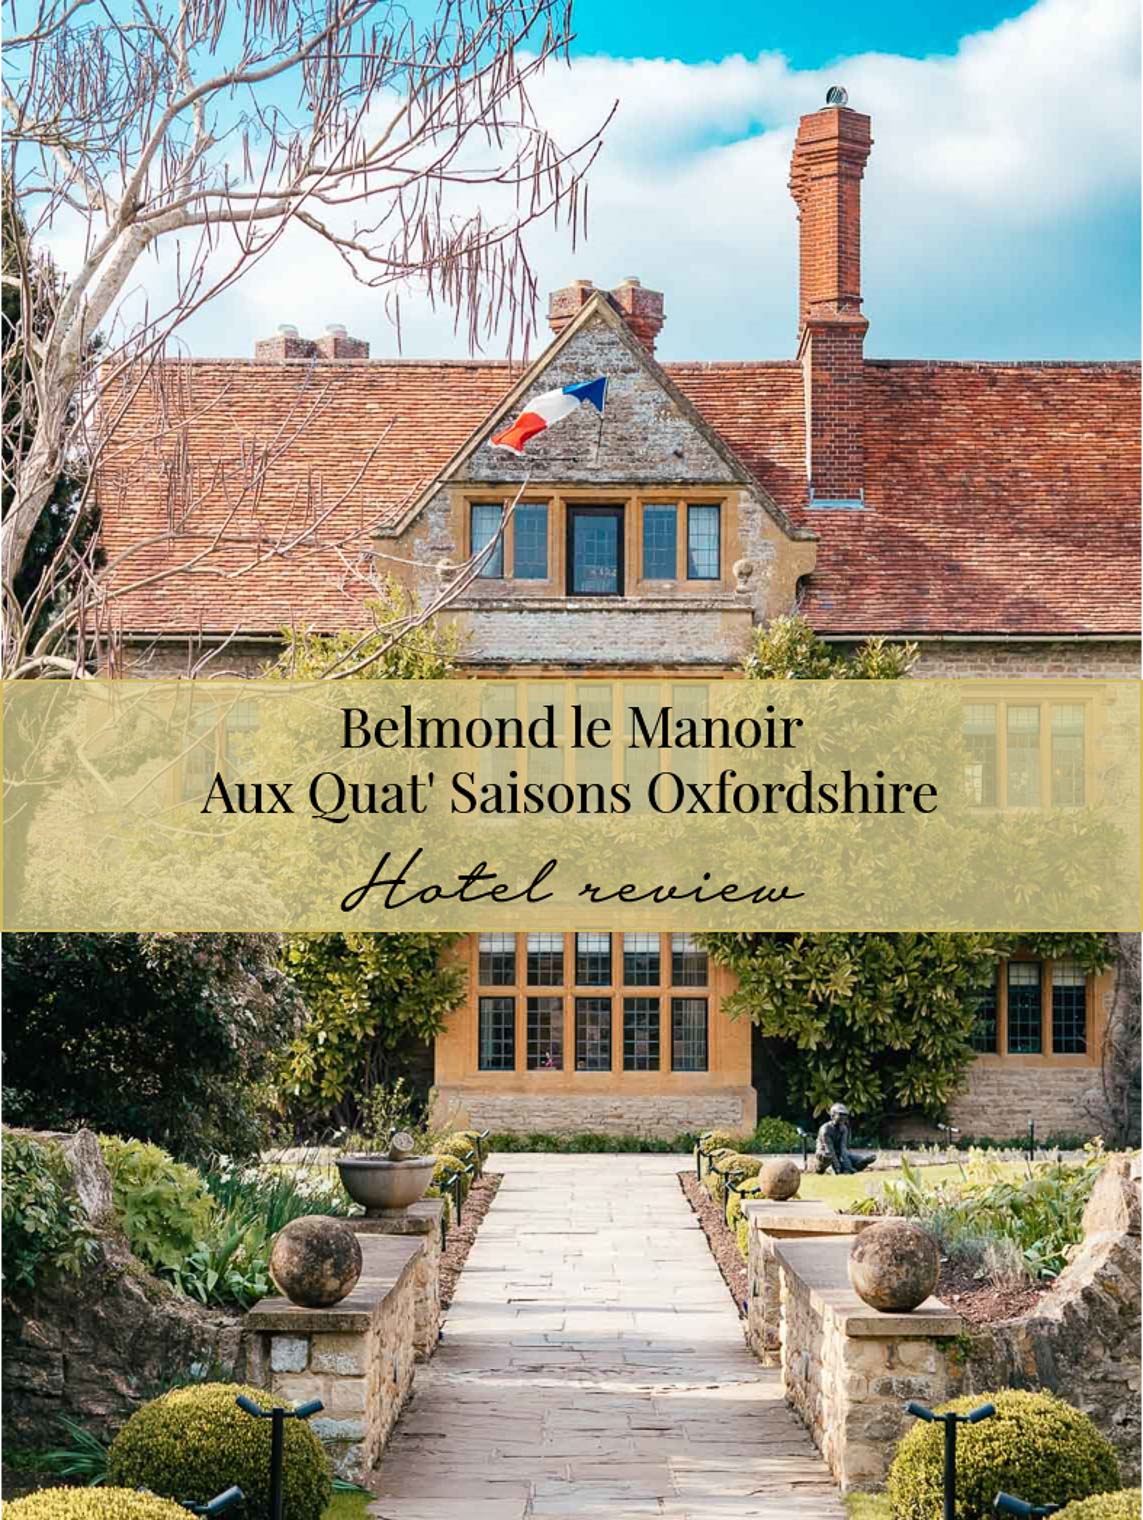 Hotel review: Belmond Le Manoir Aux Quat'Saisons hotel Oxfordshire